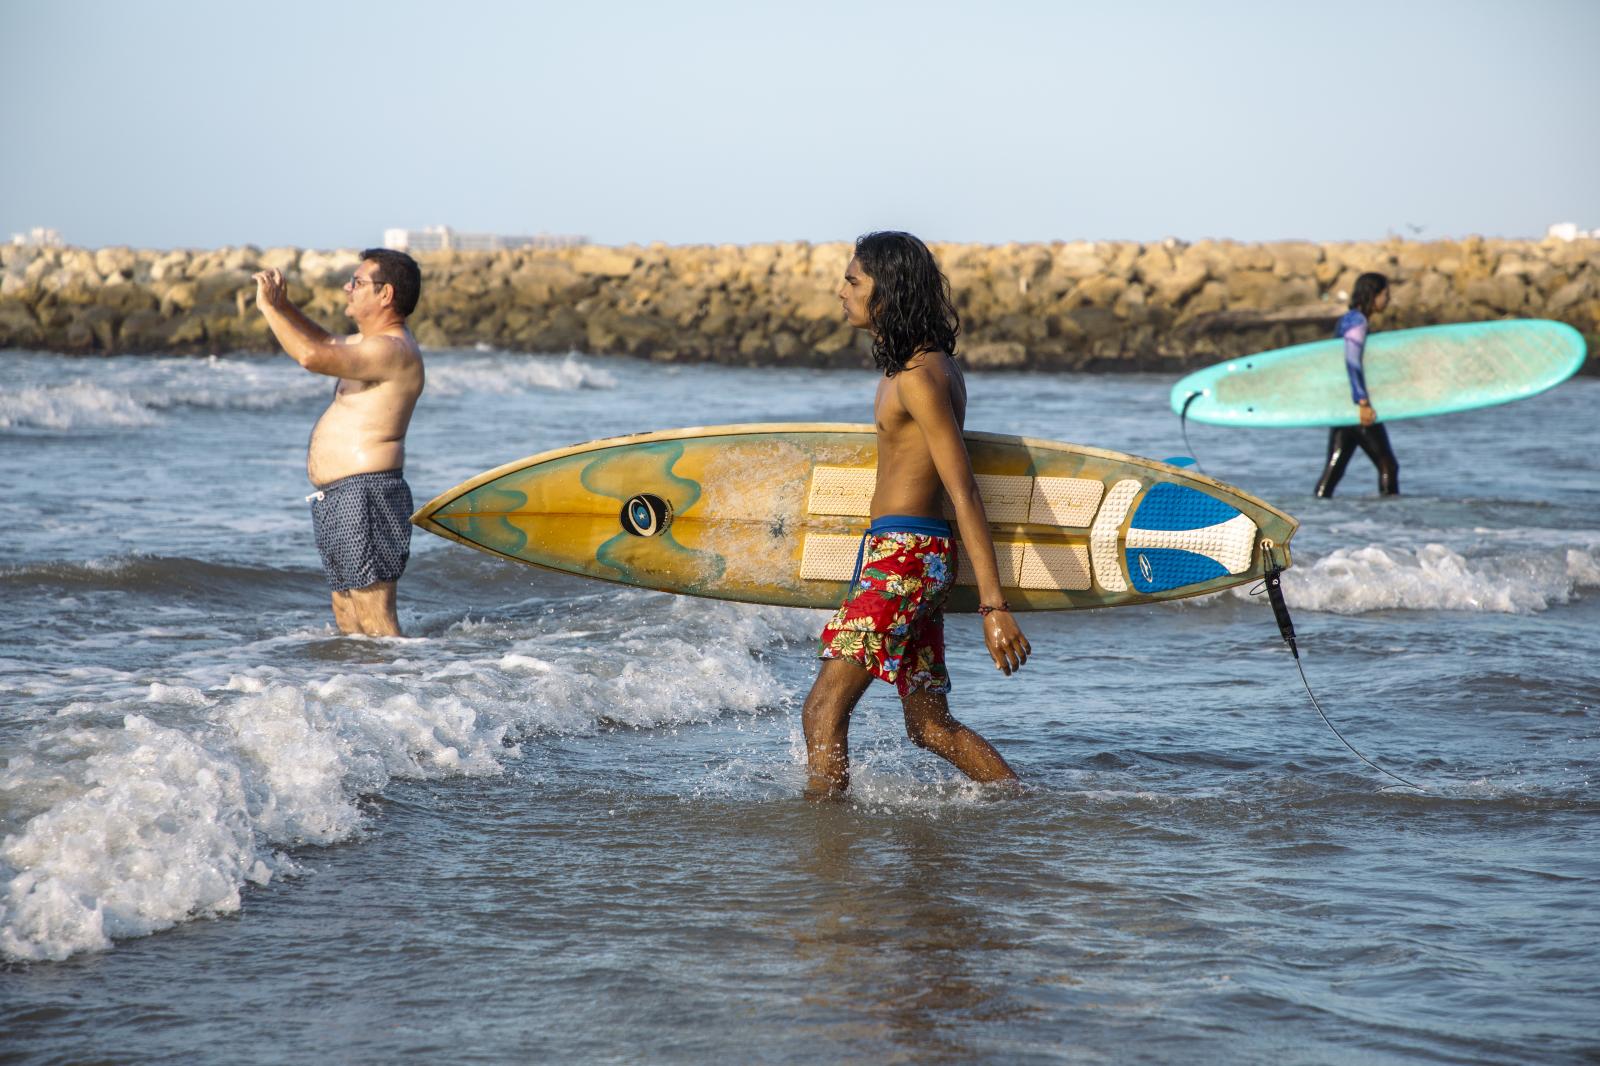 Un día de surf | Buy this image